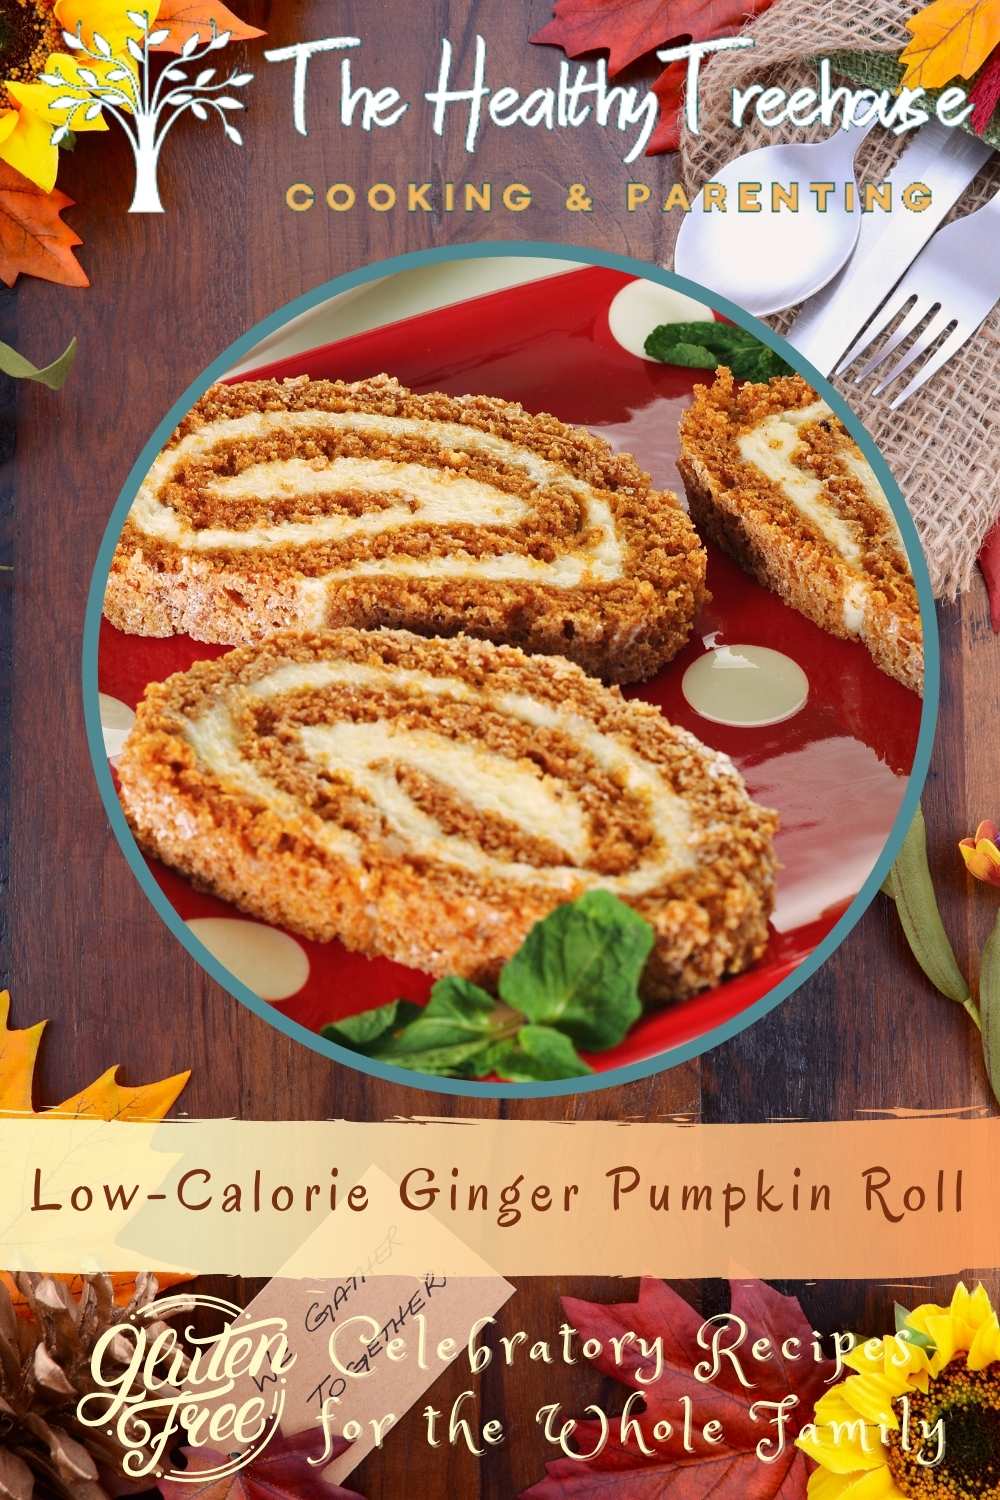 Calories Pumpkin Roll